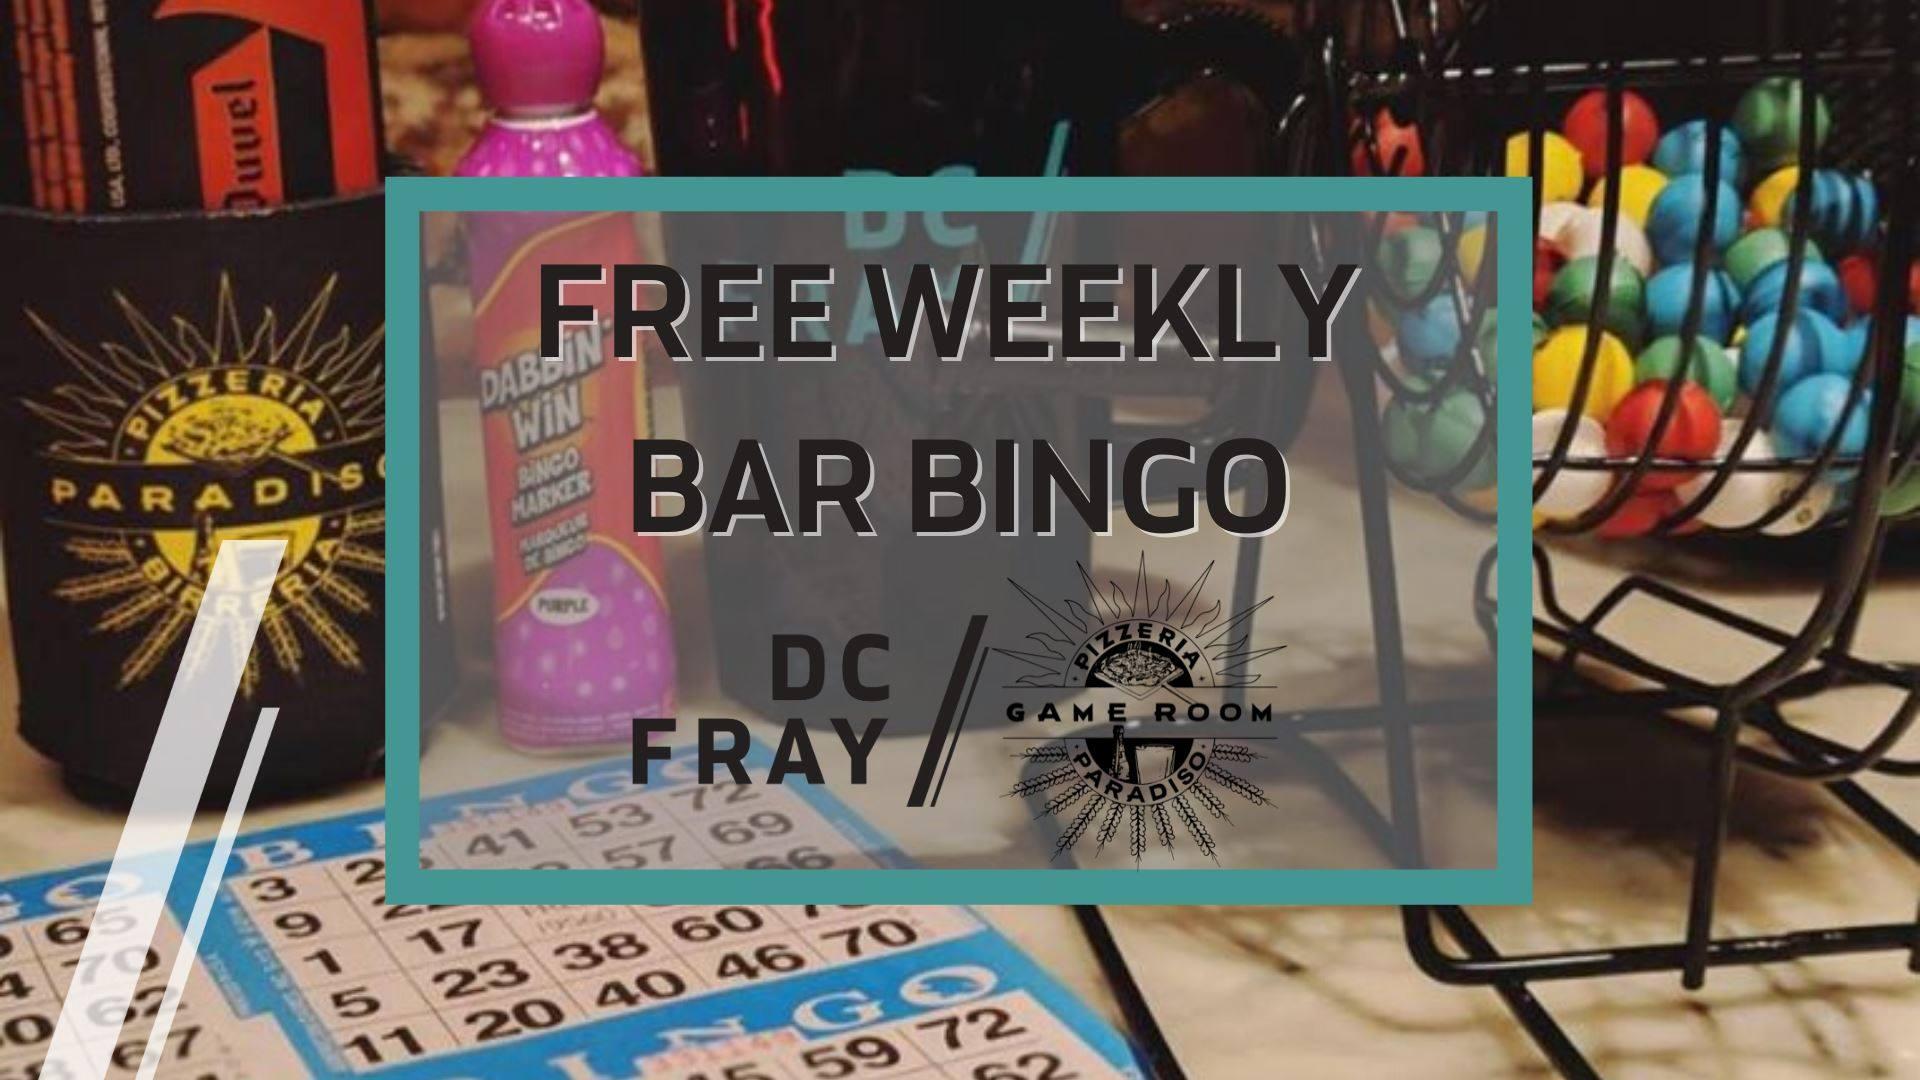 Free Weekly Bar Bingo at Pizzeria Paradiso, Every Tuesday